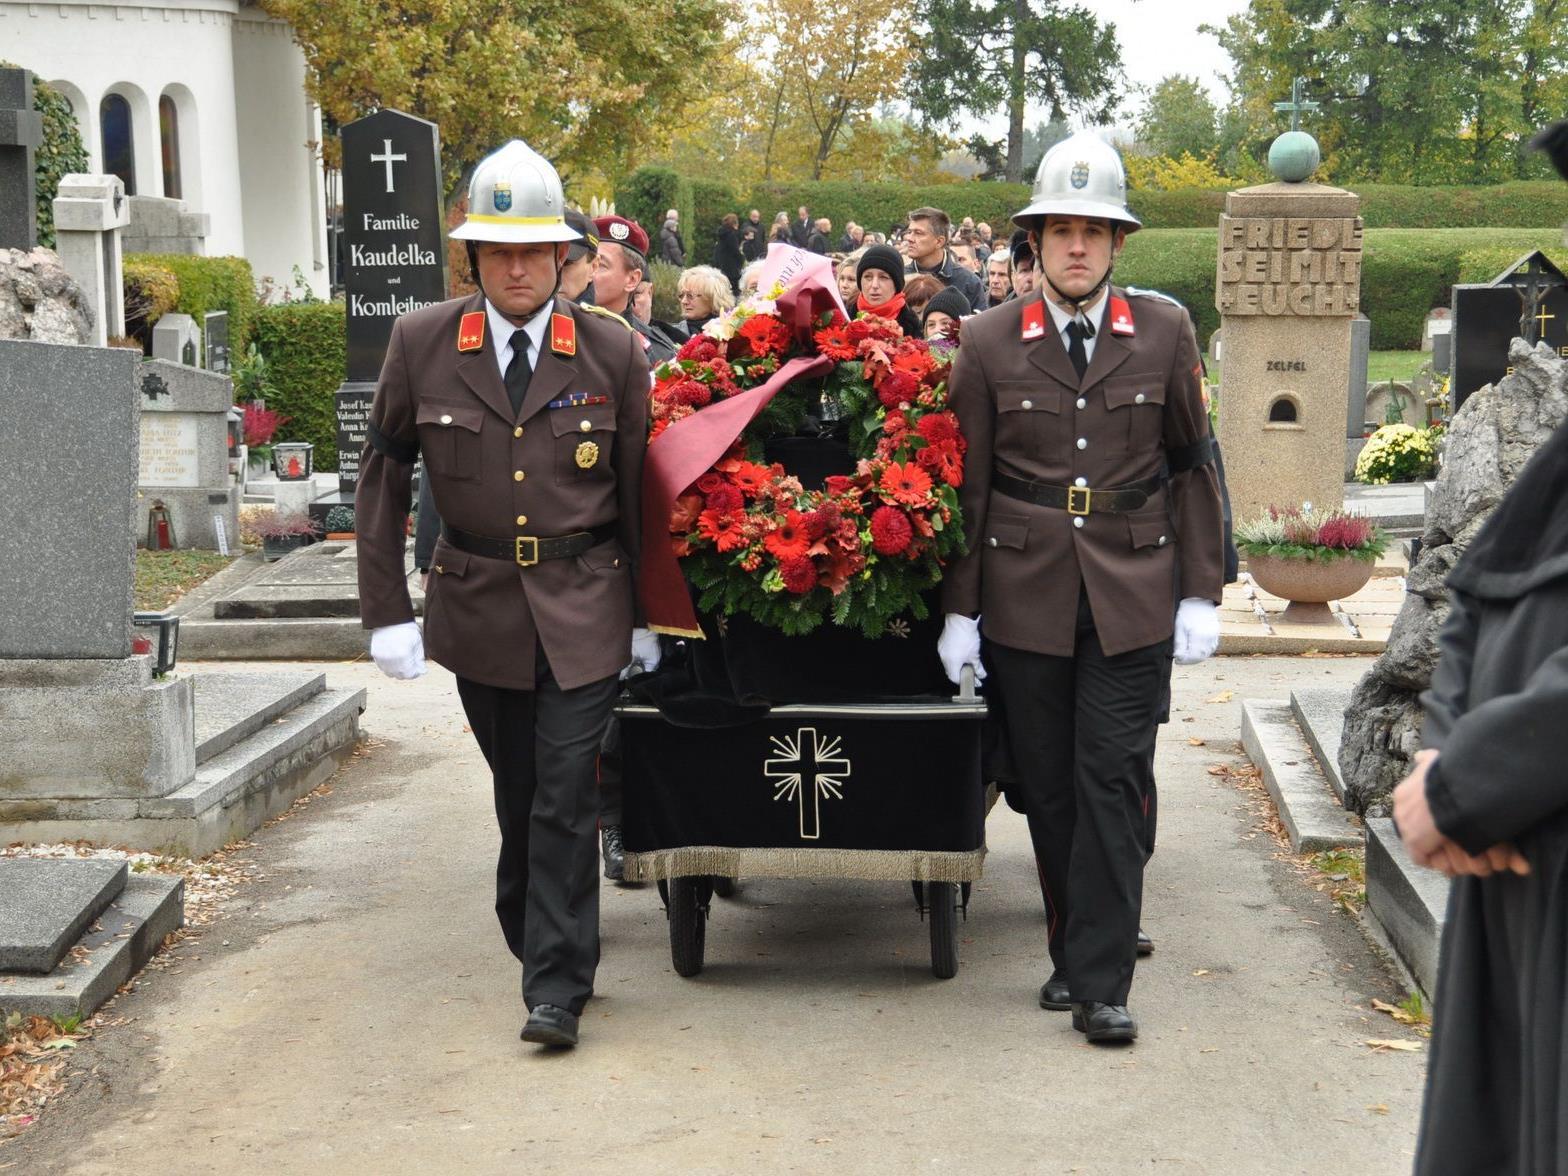 Große Anteilnahme bei der Beerdigung des verunglückten Feuerwehrmannes.